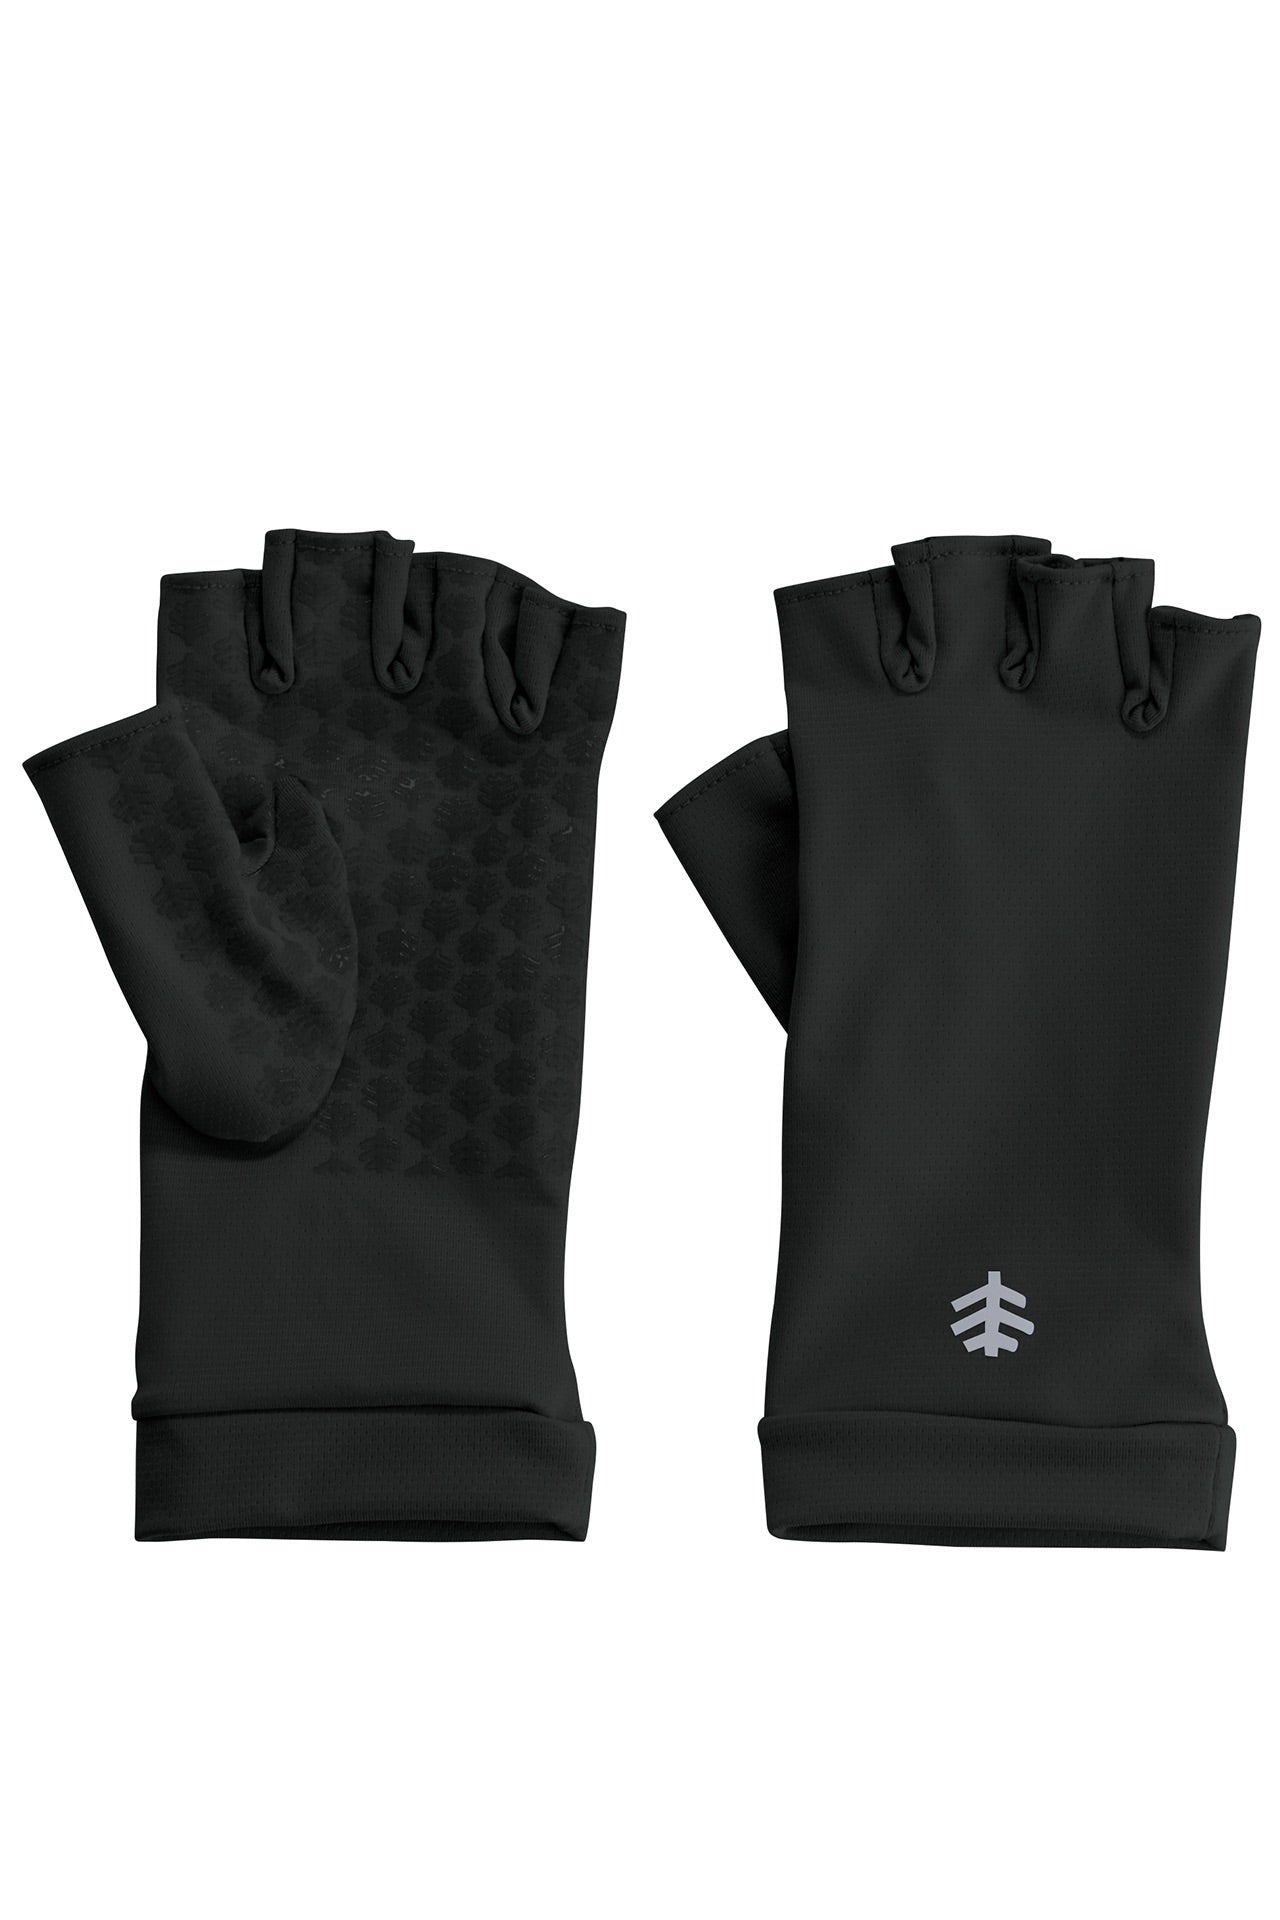 Ouray UV Fingerless Sun Gloves UPF 50+ - Coolibar